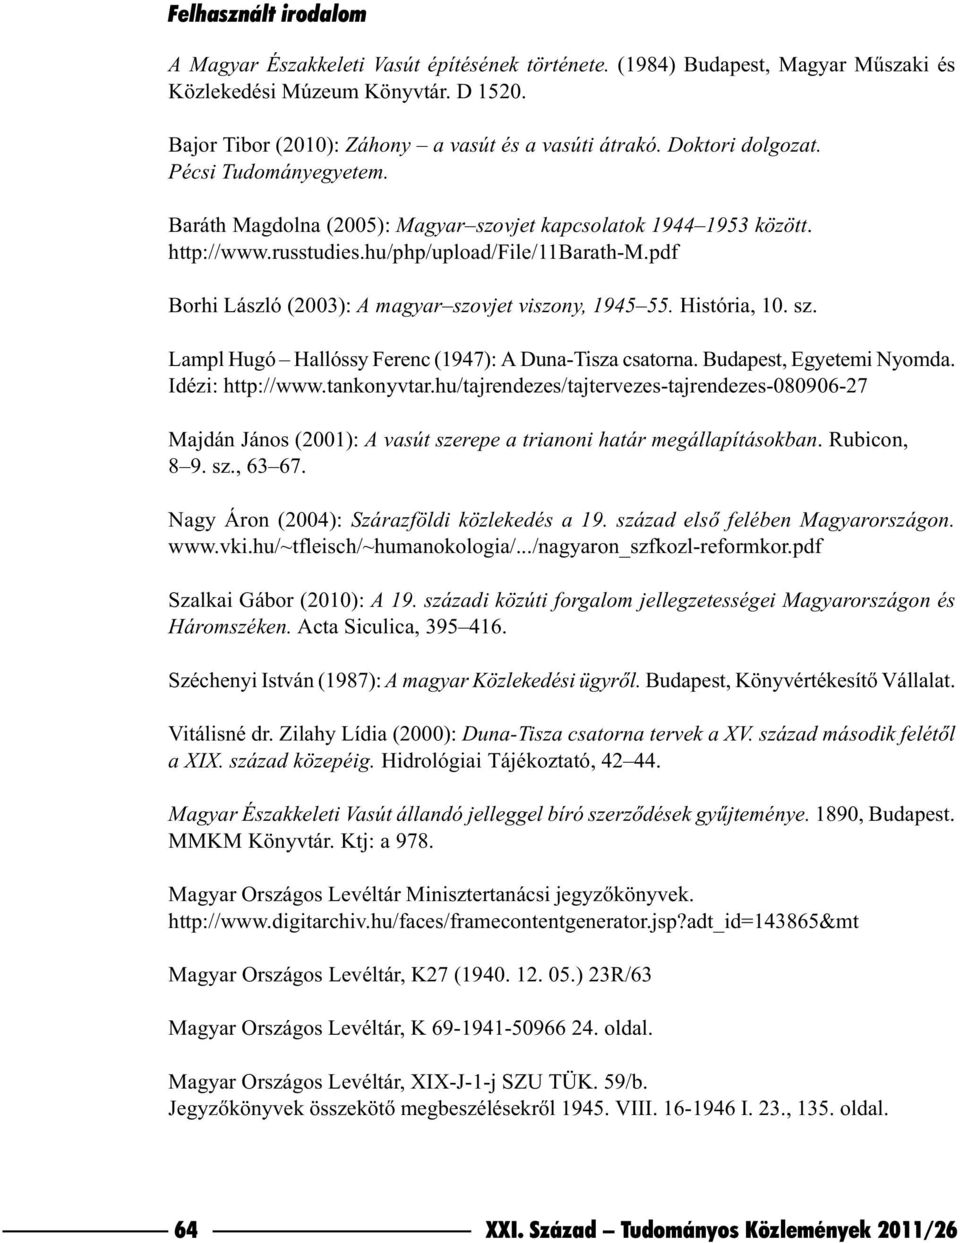 pdf Borhi László (2003): A magyar szovjet viszony, 1945 55. História, 10. sz. Lampl Hugó Hallóssy Ferenc (1947): A Duna-Tisza csatorna. Budapest, Egyetemi Nyomda. Idézi: http://www.tankonyvtar.